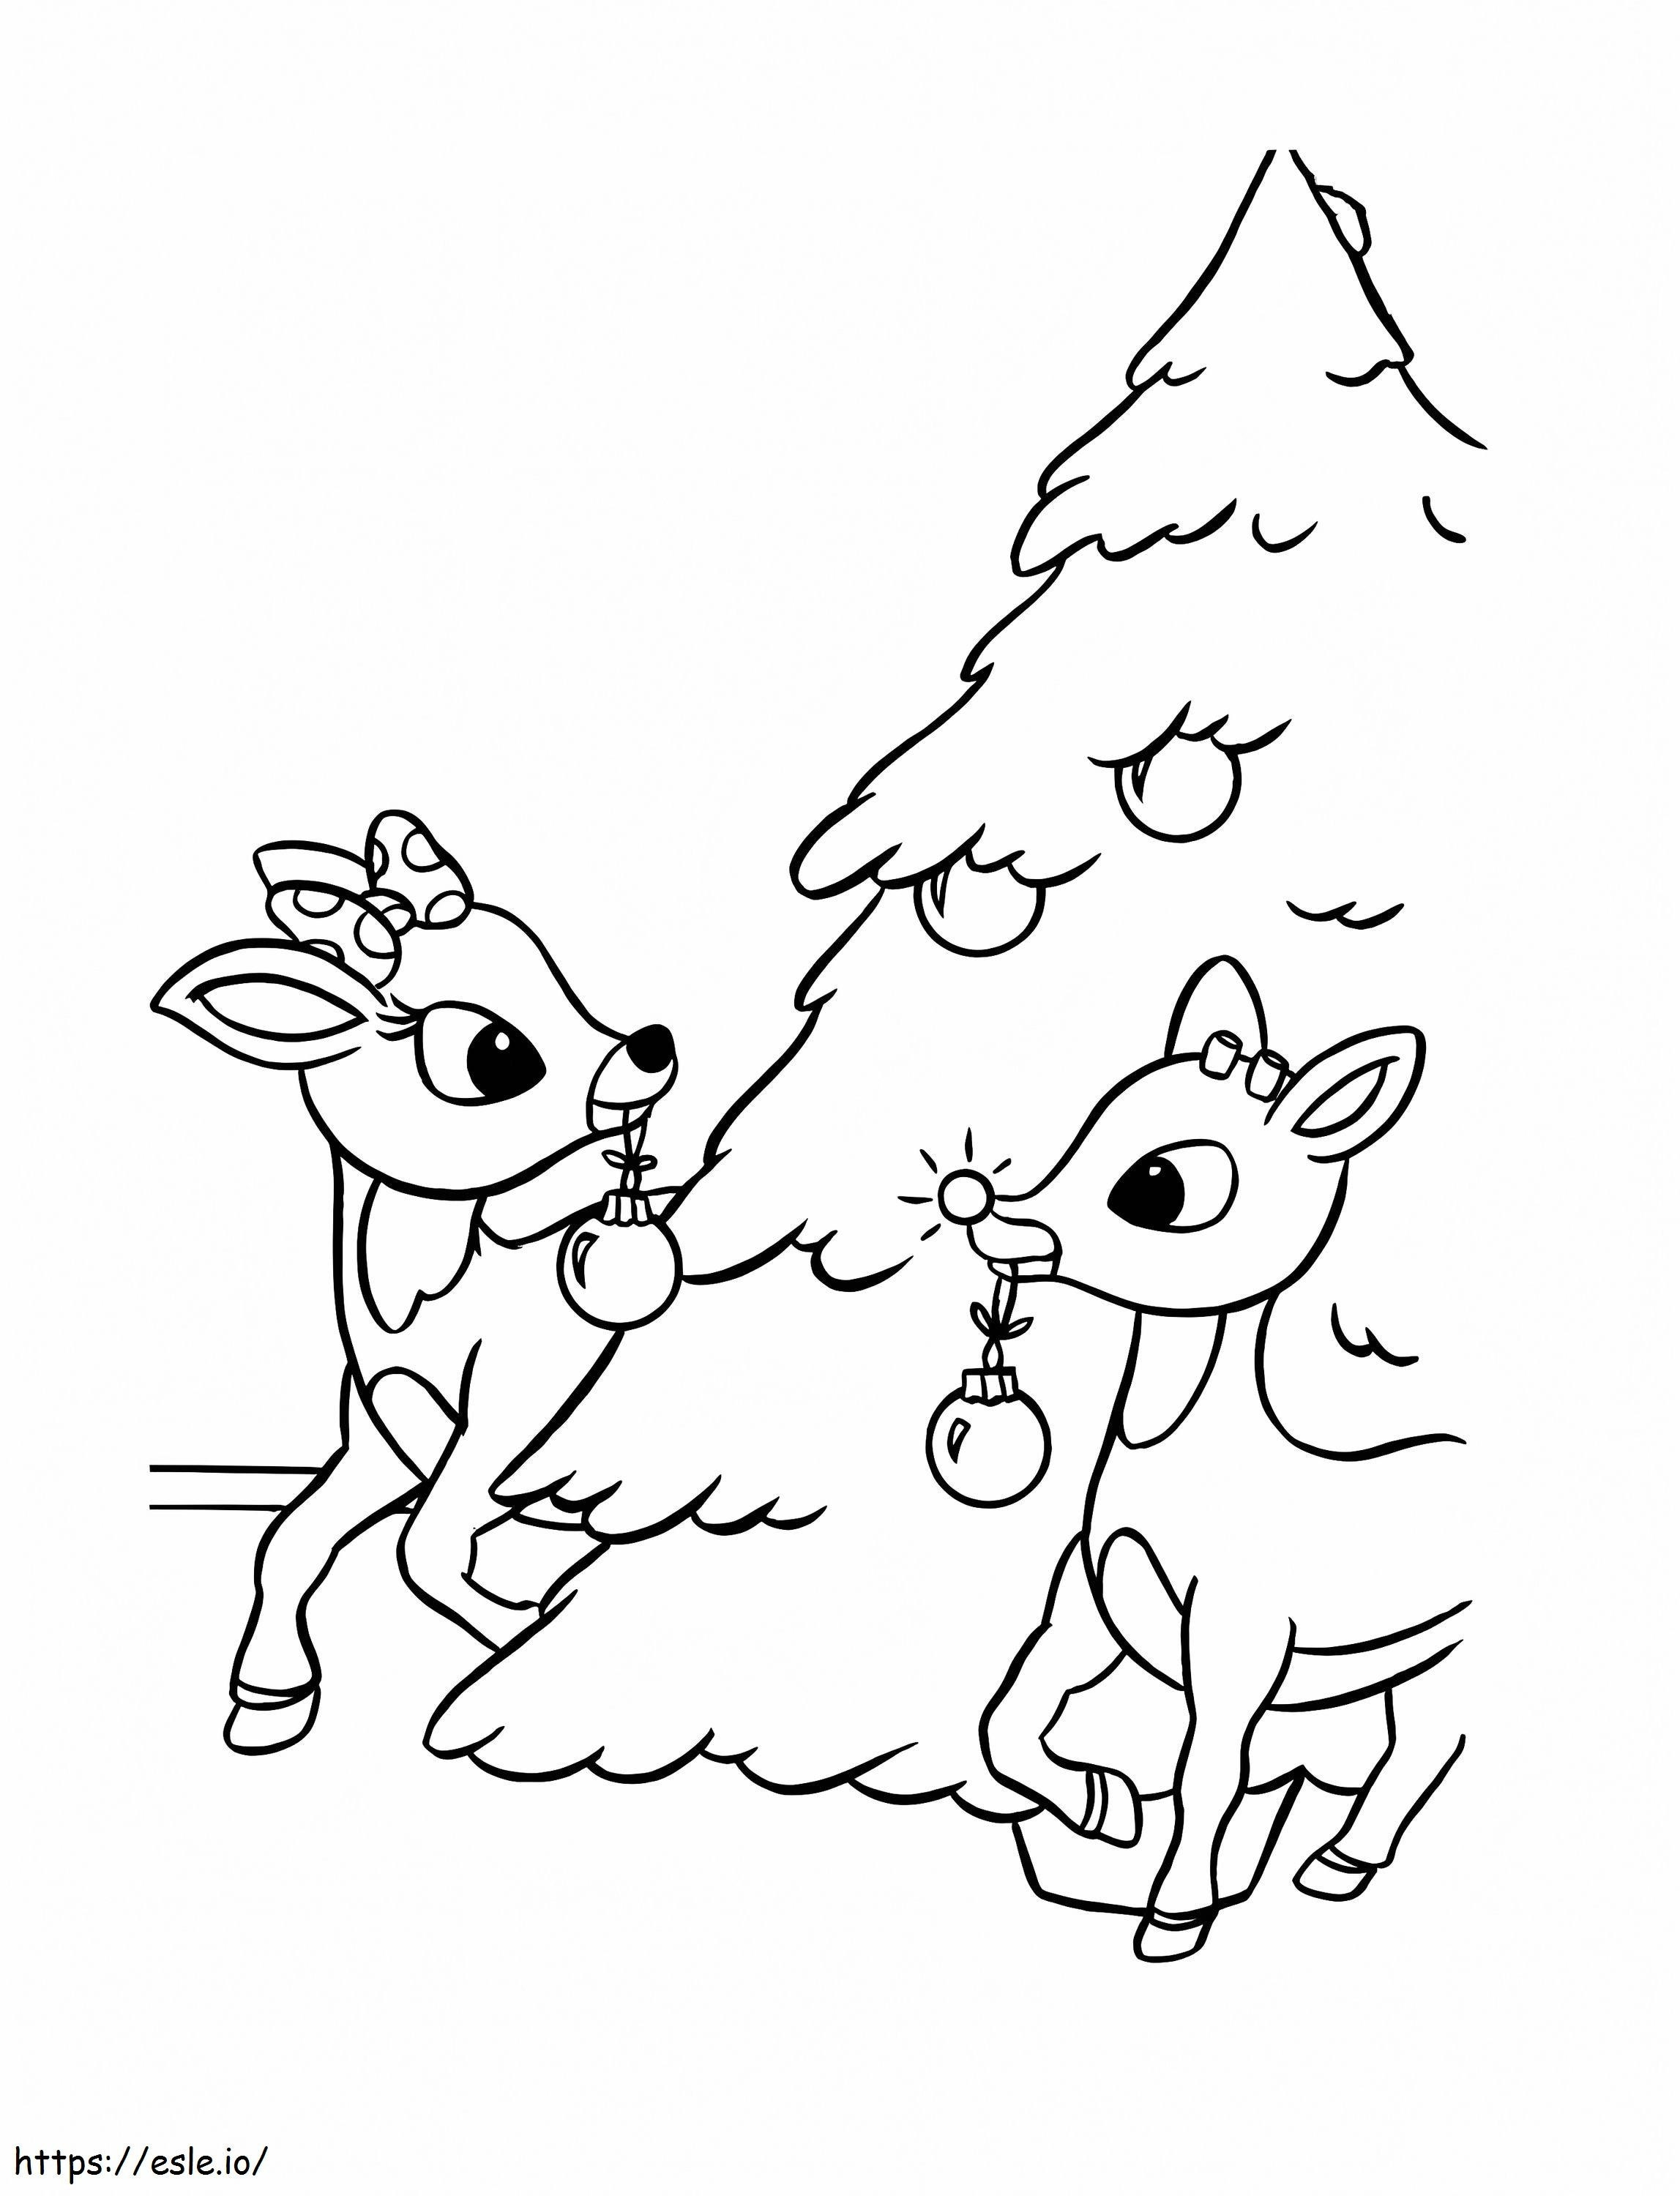 Rudolph e l'albero di Natale da colorare